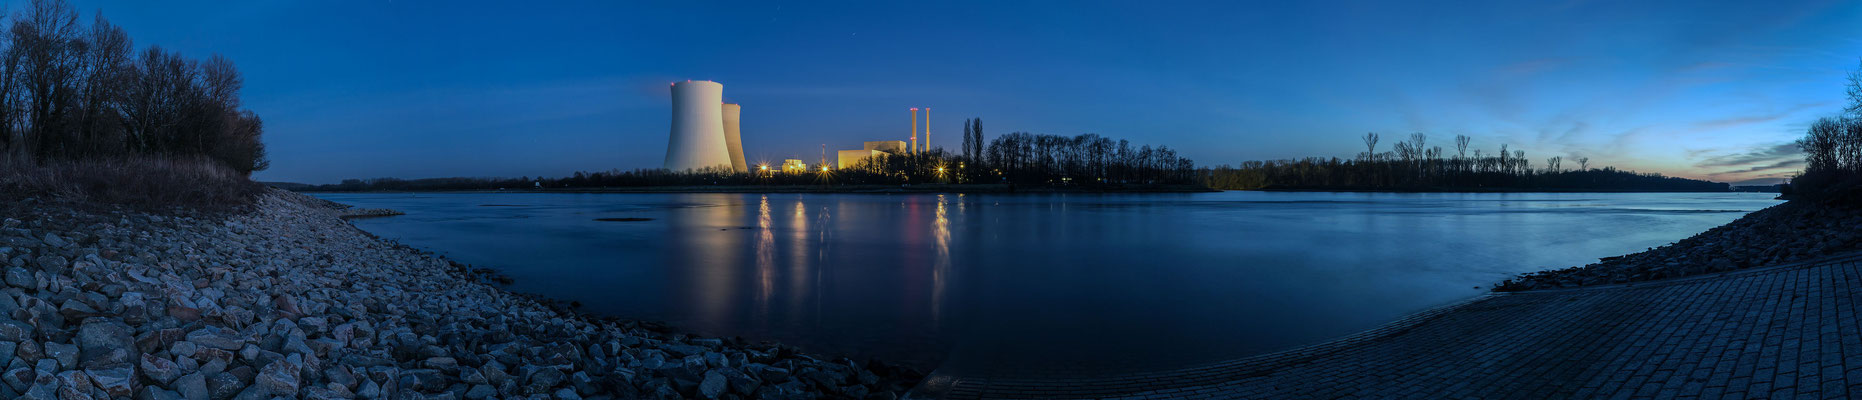 Der Rhein und das Atomkraftwerk Philippsburg